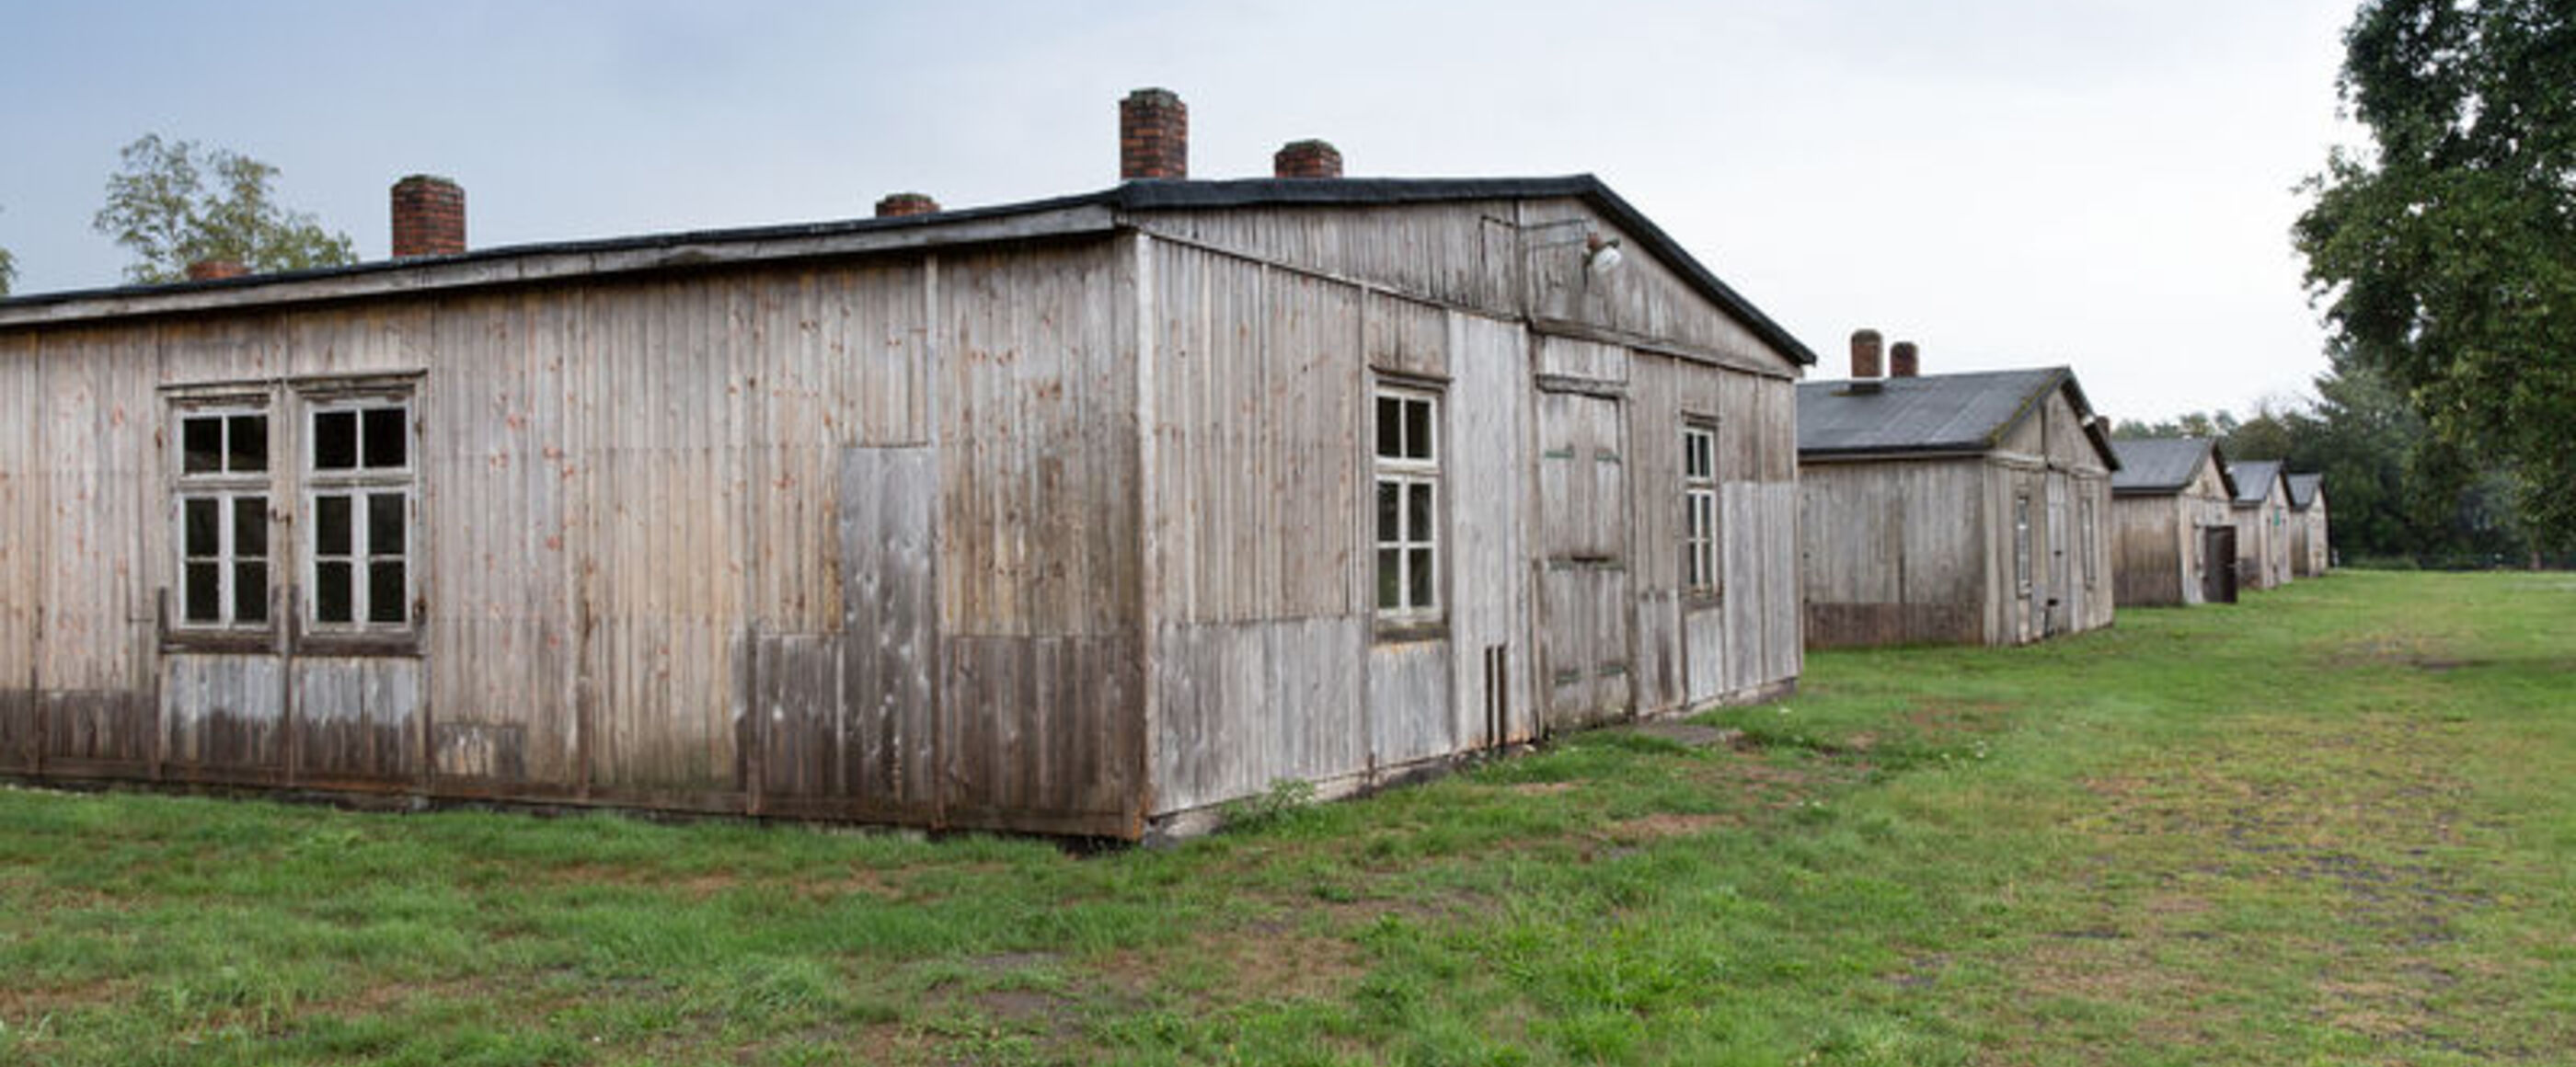 Einfache Bretter bilden eine Holzhütte mit wenig Fenstern auf einem stoppeligen Rasen.